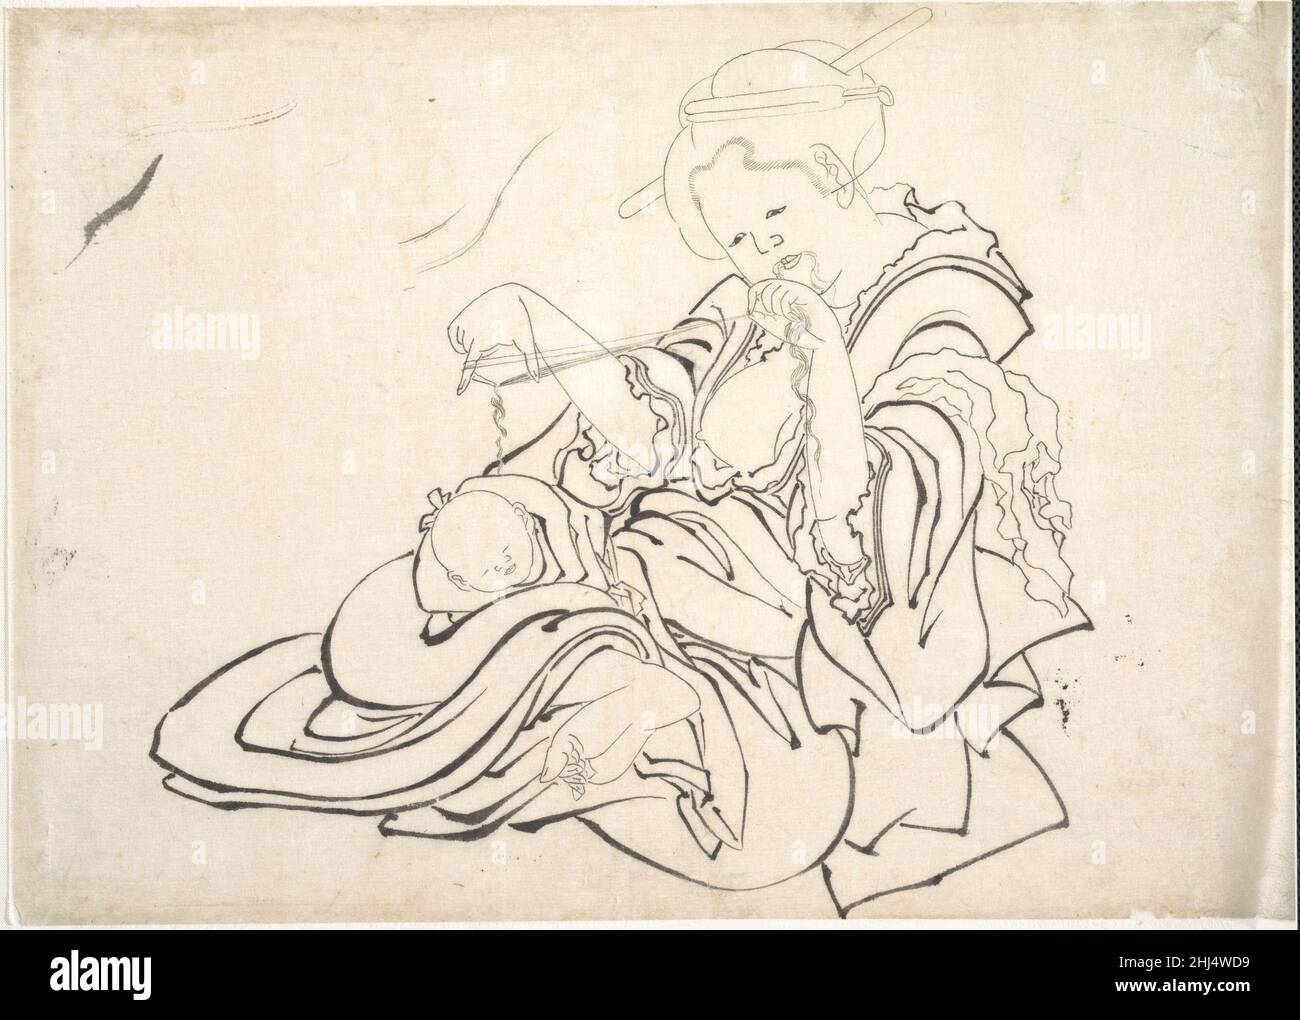 Une femme et un bébé 1830s Katsushika Hokusai japonais Hokusai, un artiste principalement connu pour ses paysages, dans ce dessin joliment représenté une mère et un enfant jouant le berceau du chat.Les deux figures, absolument seules, se concentrent uniquement l'une sur l'autre; la relation émotionnelle intime entre elles est tendinement réalisé.les proportions corporelles de cette femme ne correspondent pas à ceux à la mode à l'époque et bien représentés par les dames délicates et raffinées de Harunobu ou les femmes allongées et minces d'Utamaro.Une femme et un bébé.Katsushika Hokusai (japonais, Tokyo (Edo) 1760–1849 Tokyo (Edo)).Japon.1830s.Mono Banque D'Images